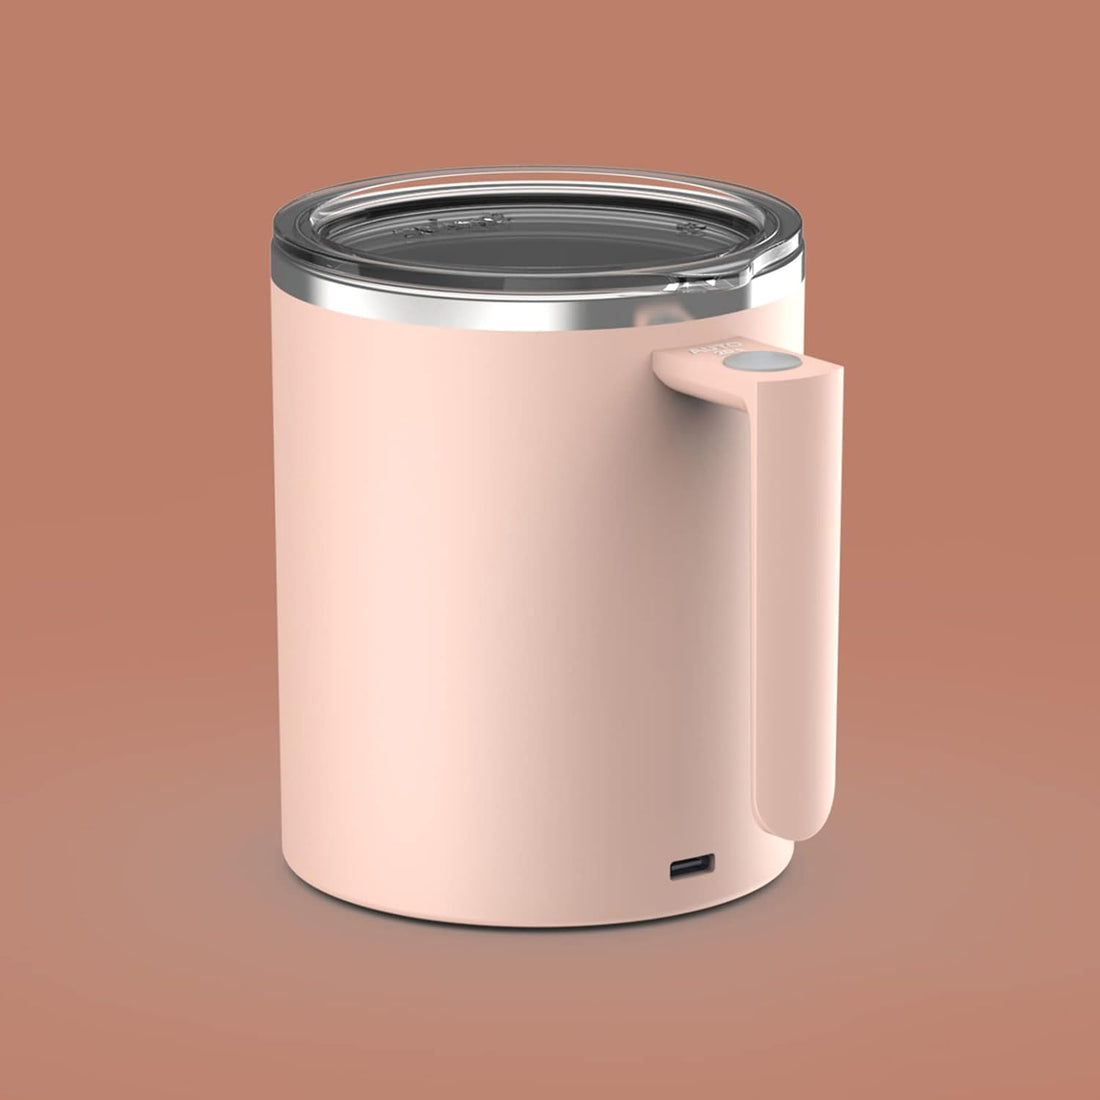 FOXNSK Self Stirring Mug, Self Stirring Coffee Mug Magnetic Stirring Mug Electric Magnetic Stirring Coffee Mug Rechargeable Self Stirring Mug Suitable for Coffee/Milk/Protein Powder (Pink)